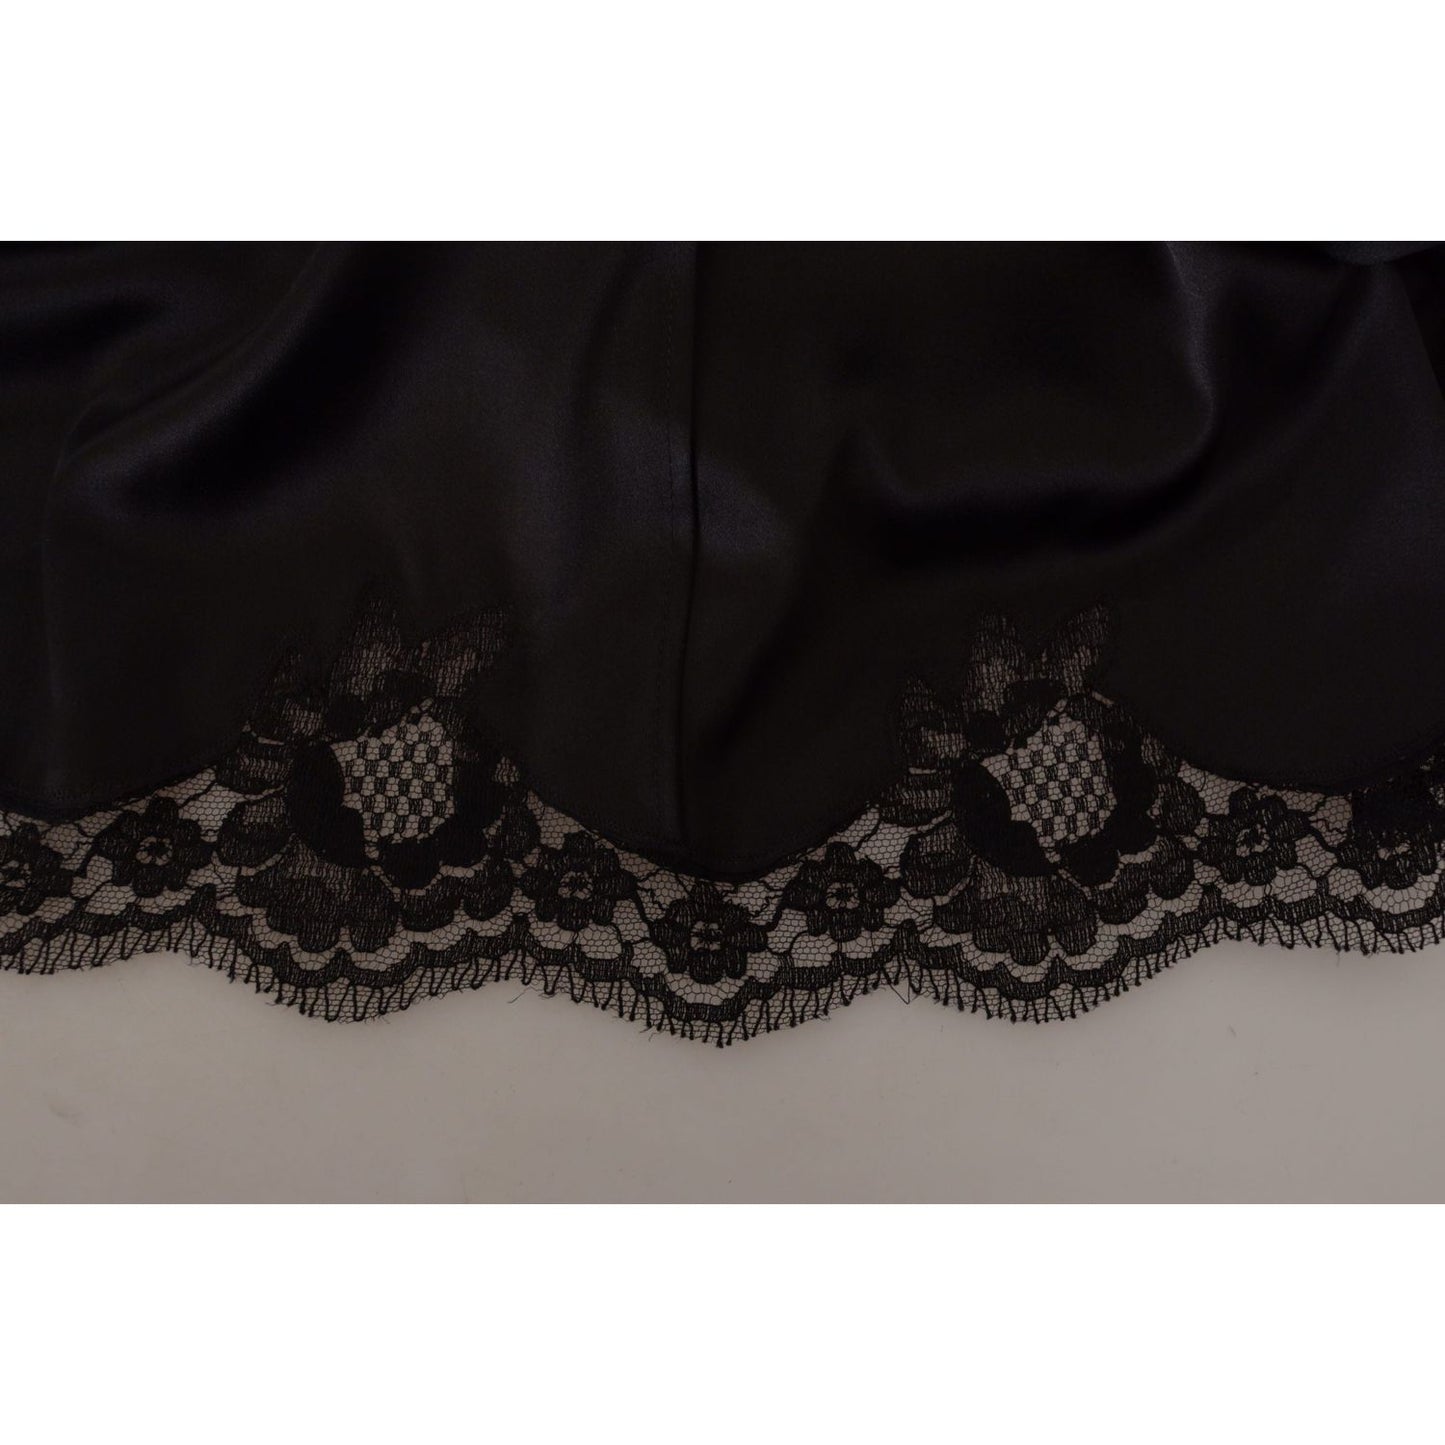 Dolce & GabbanaElegant Black V-Neck A-Line DressMcRichard Designer Brands£899.00